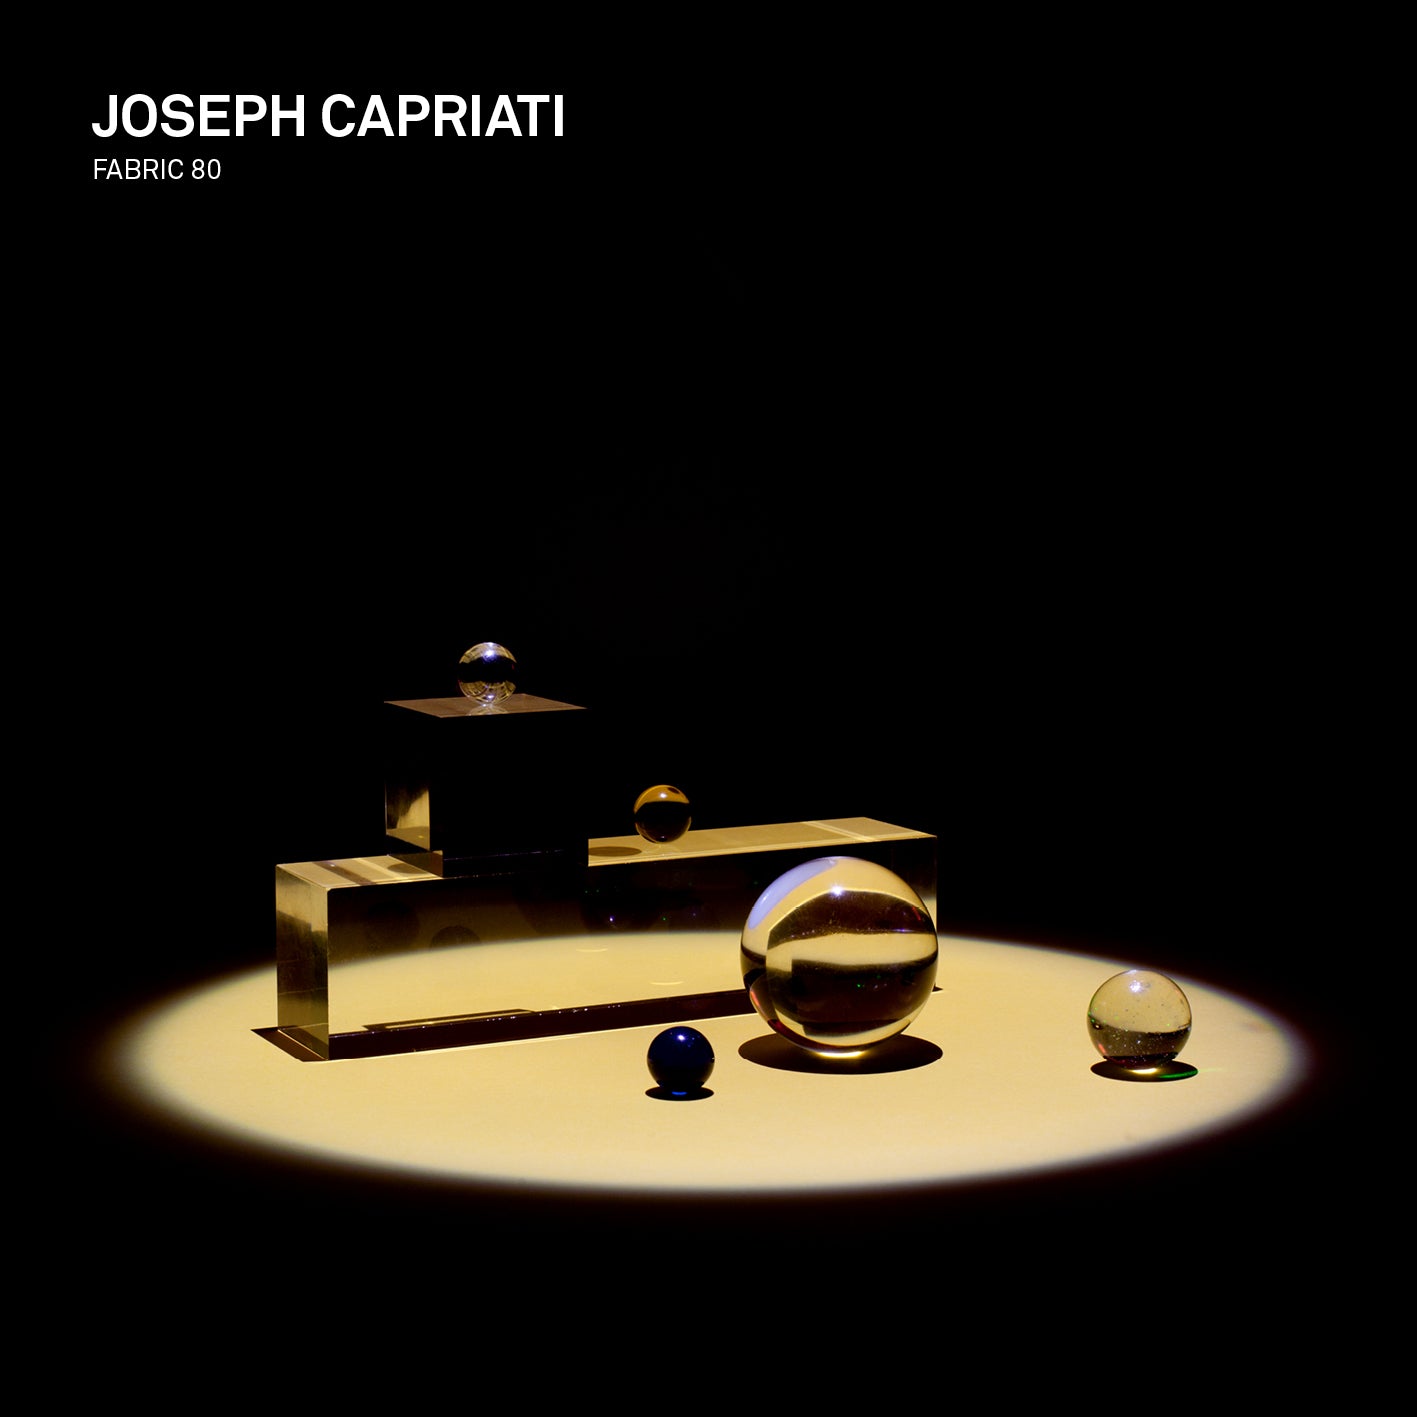 Joseph Capriati - fabric 80